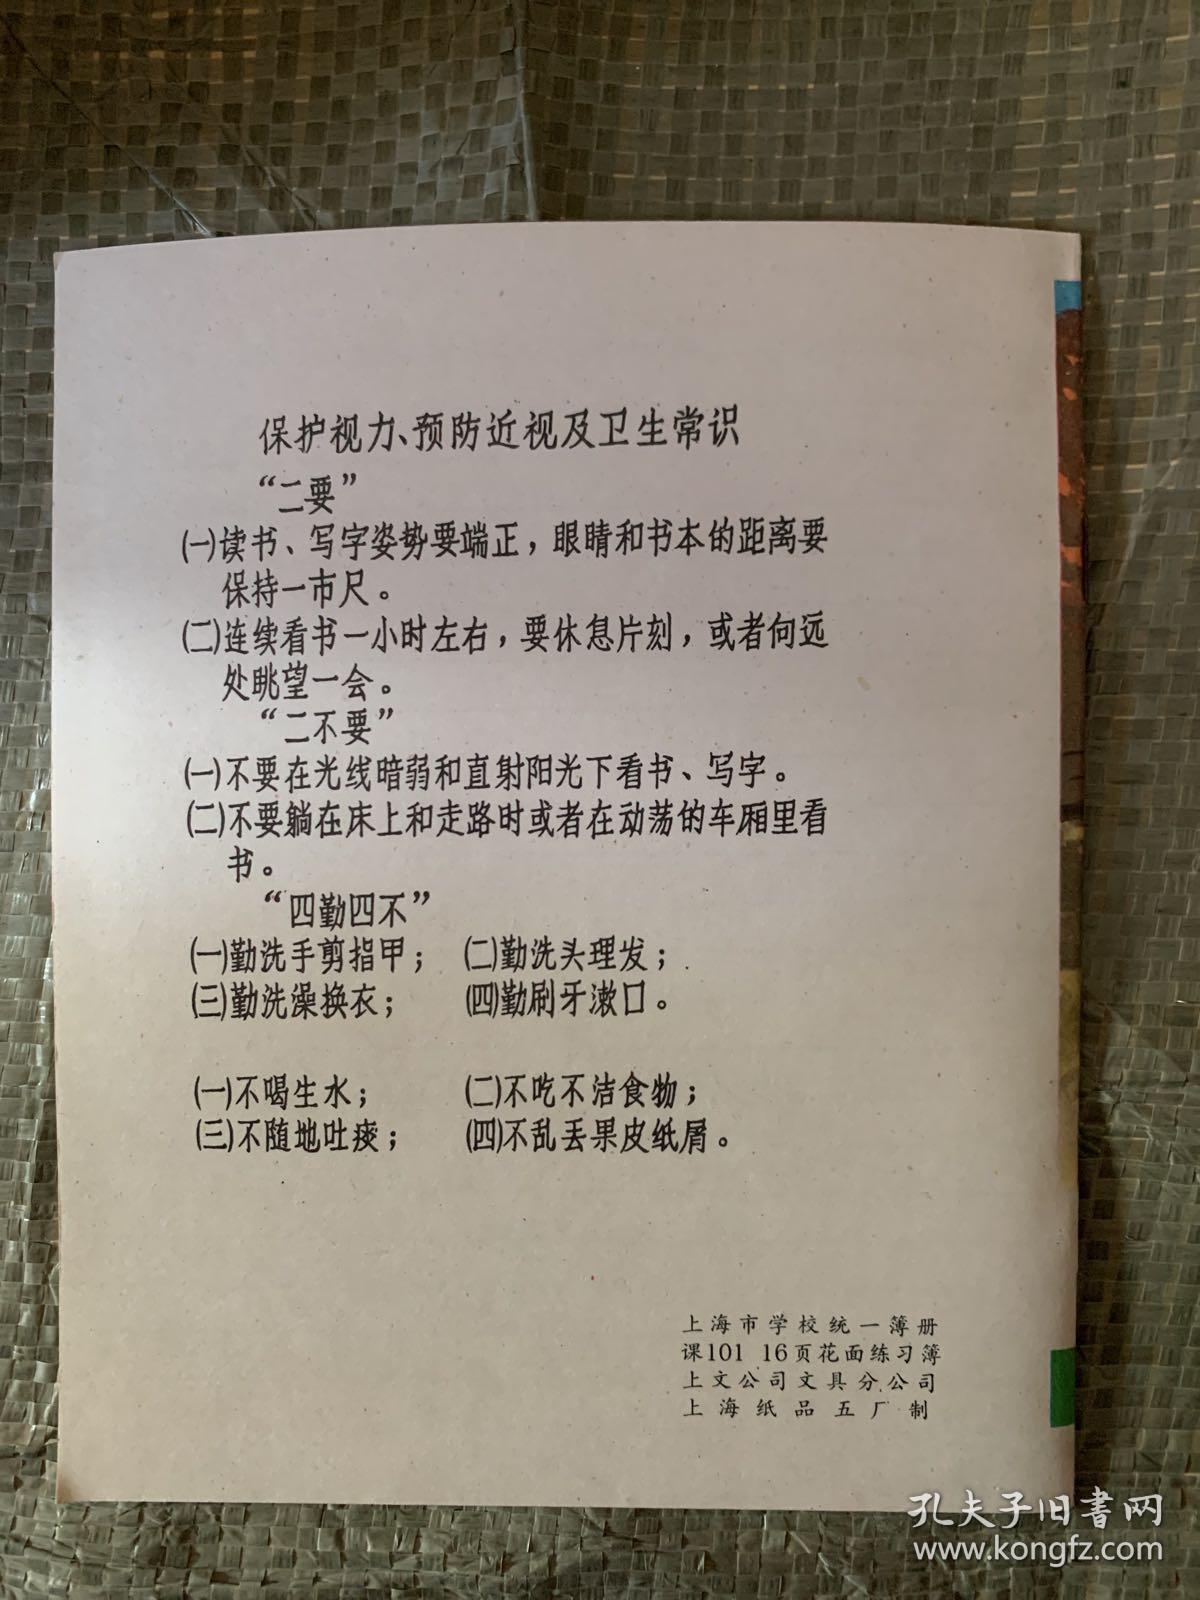 上海市学校统一簿册 练习簿 未使用.....、、、